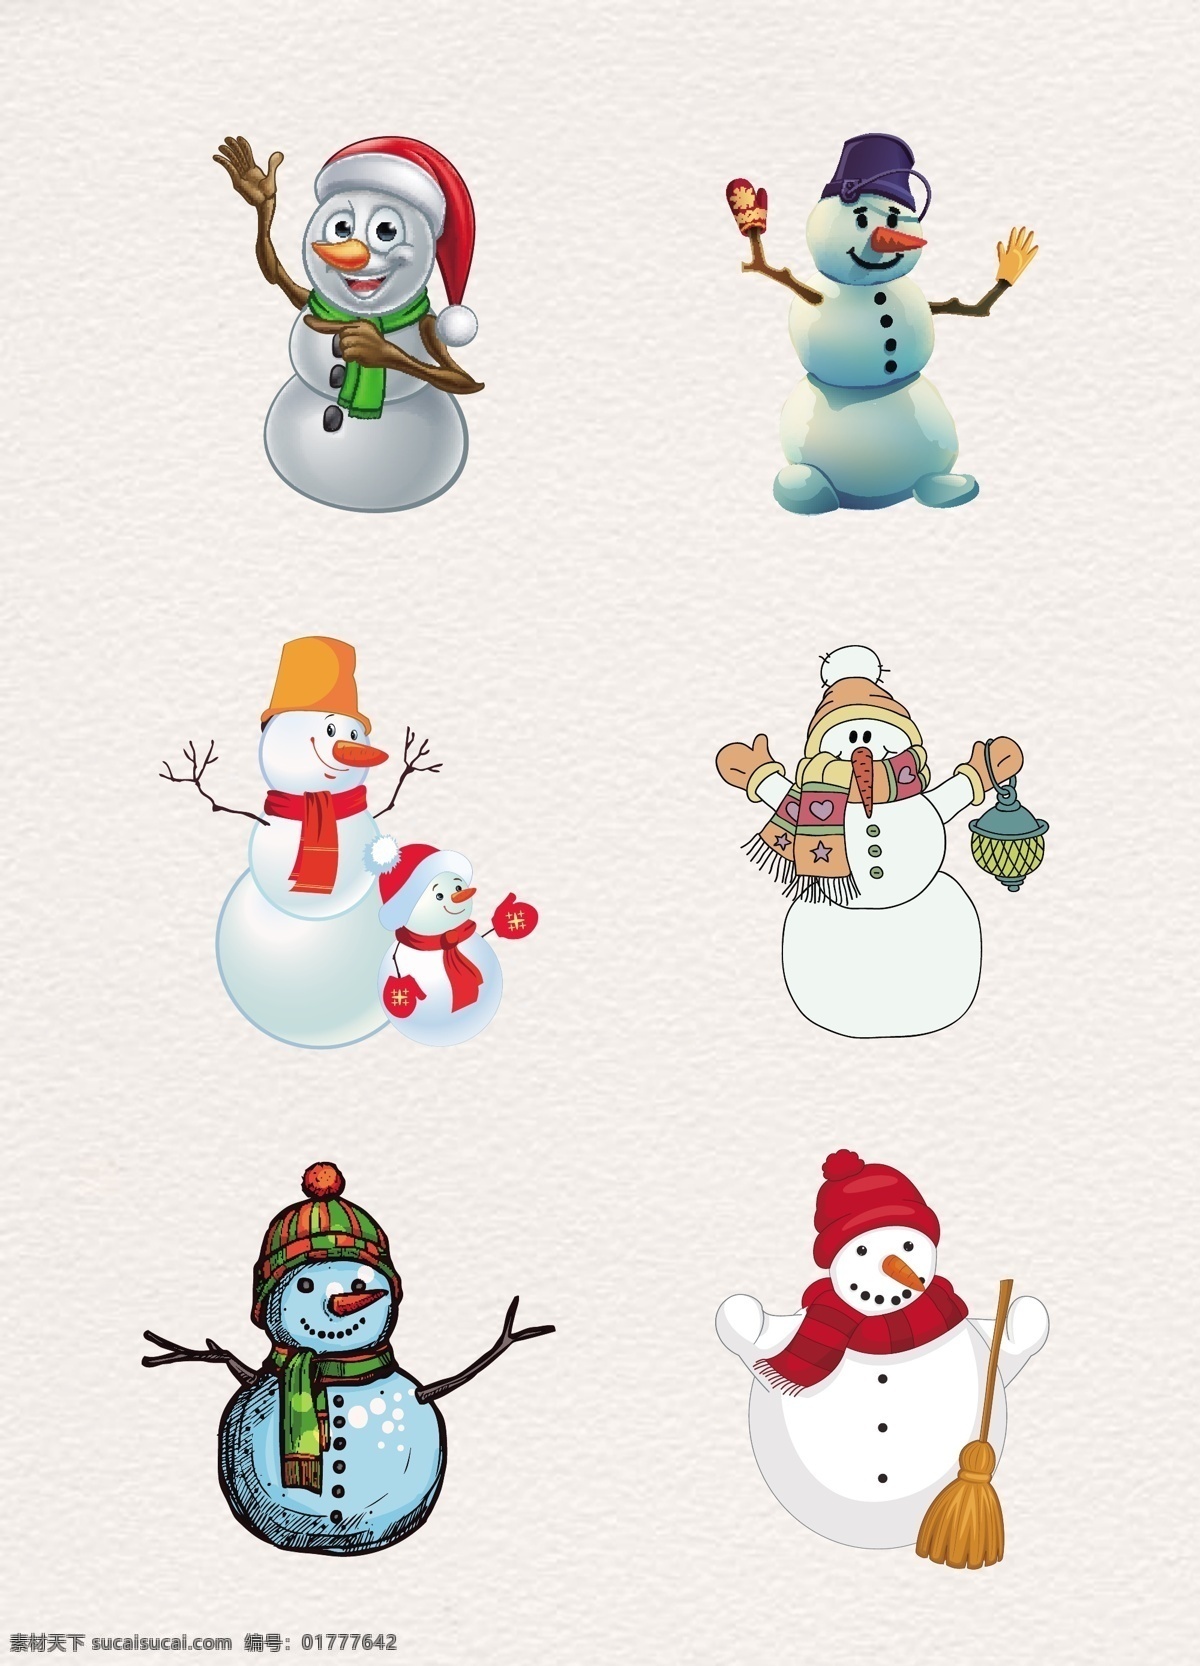 手绘 创意 组 雪人 圣诞 元素 矢量 圣诞节 装饰图案 节日元素 堆雪人 冬季元素 立冬 冬至 扫把 圣诞装扮